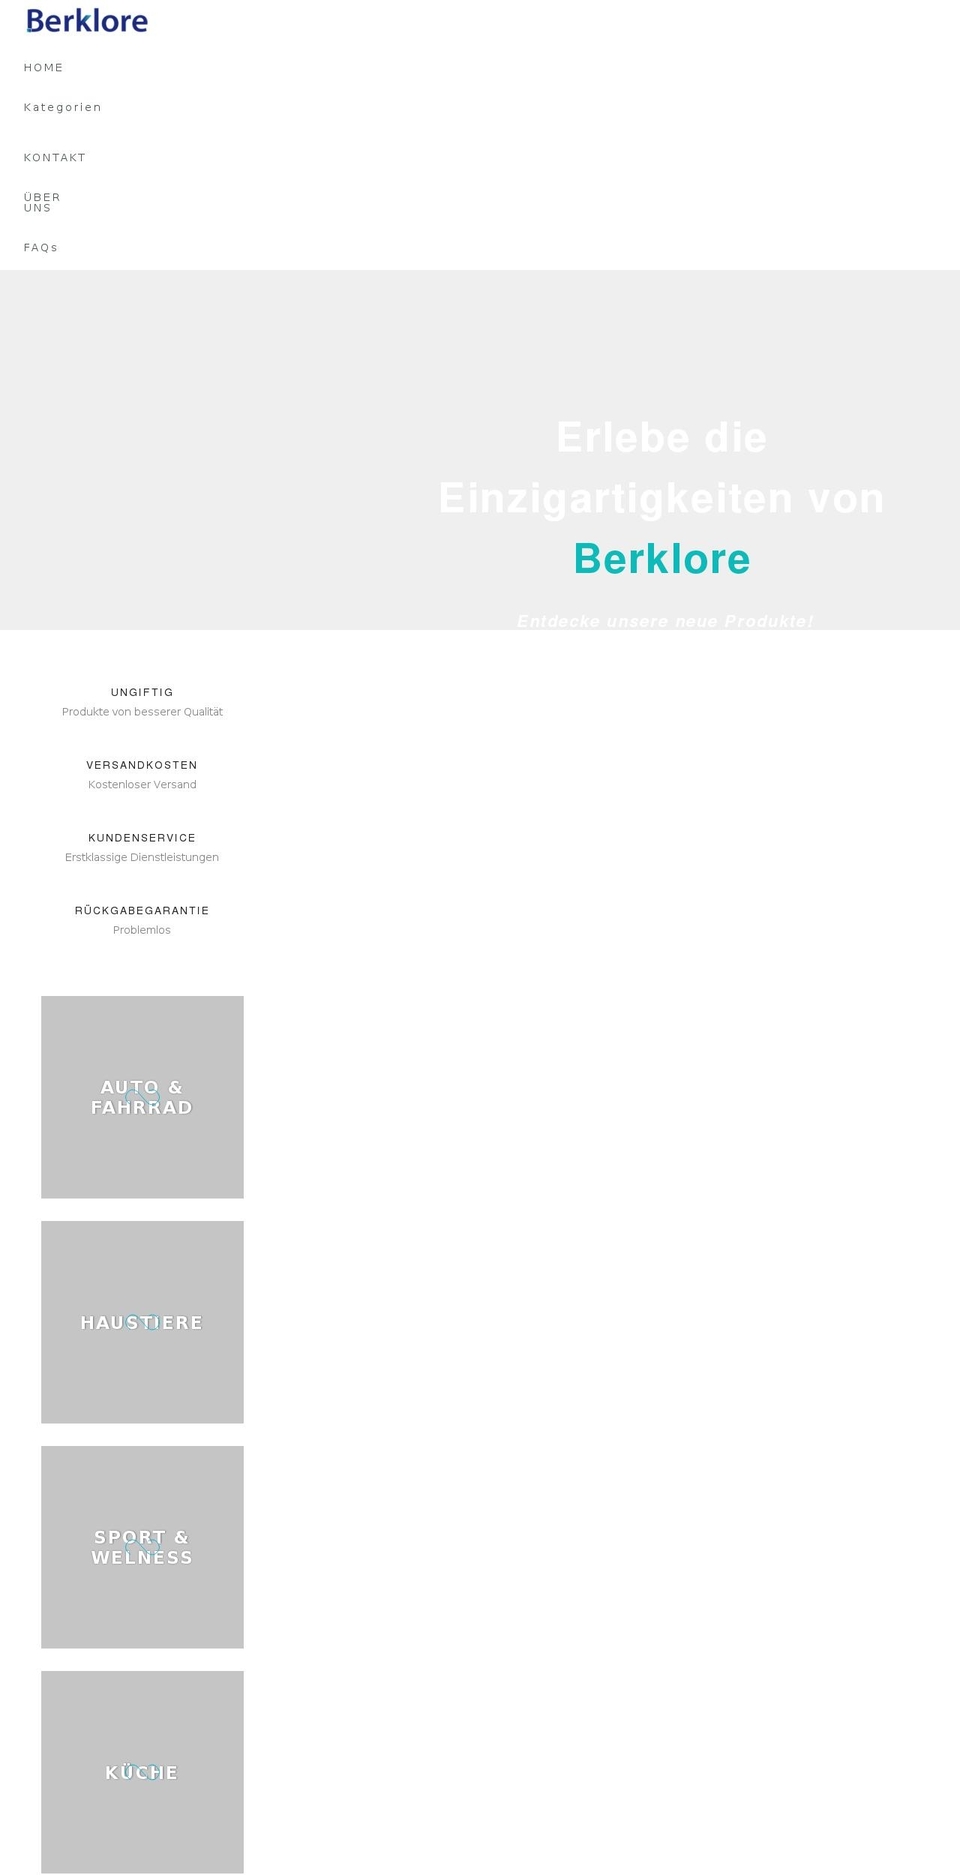 Gecko Shopify theme site example berklore.com